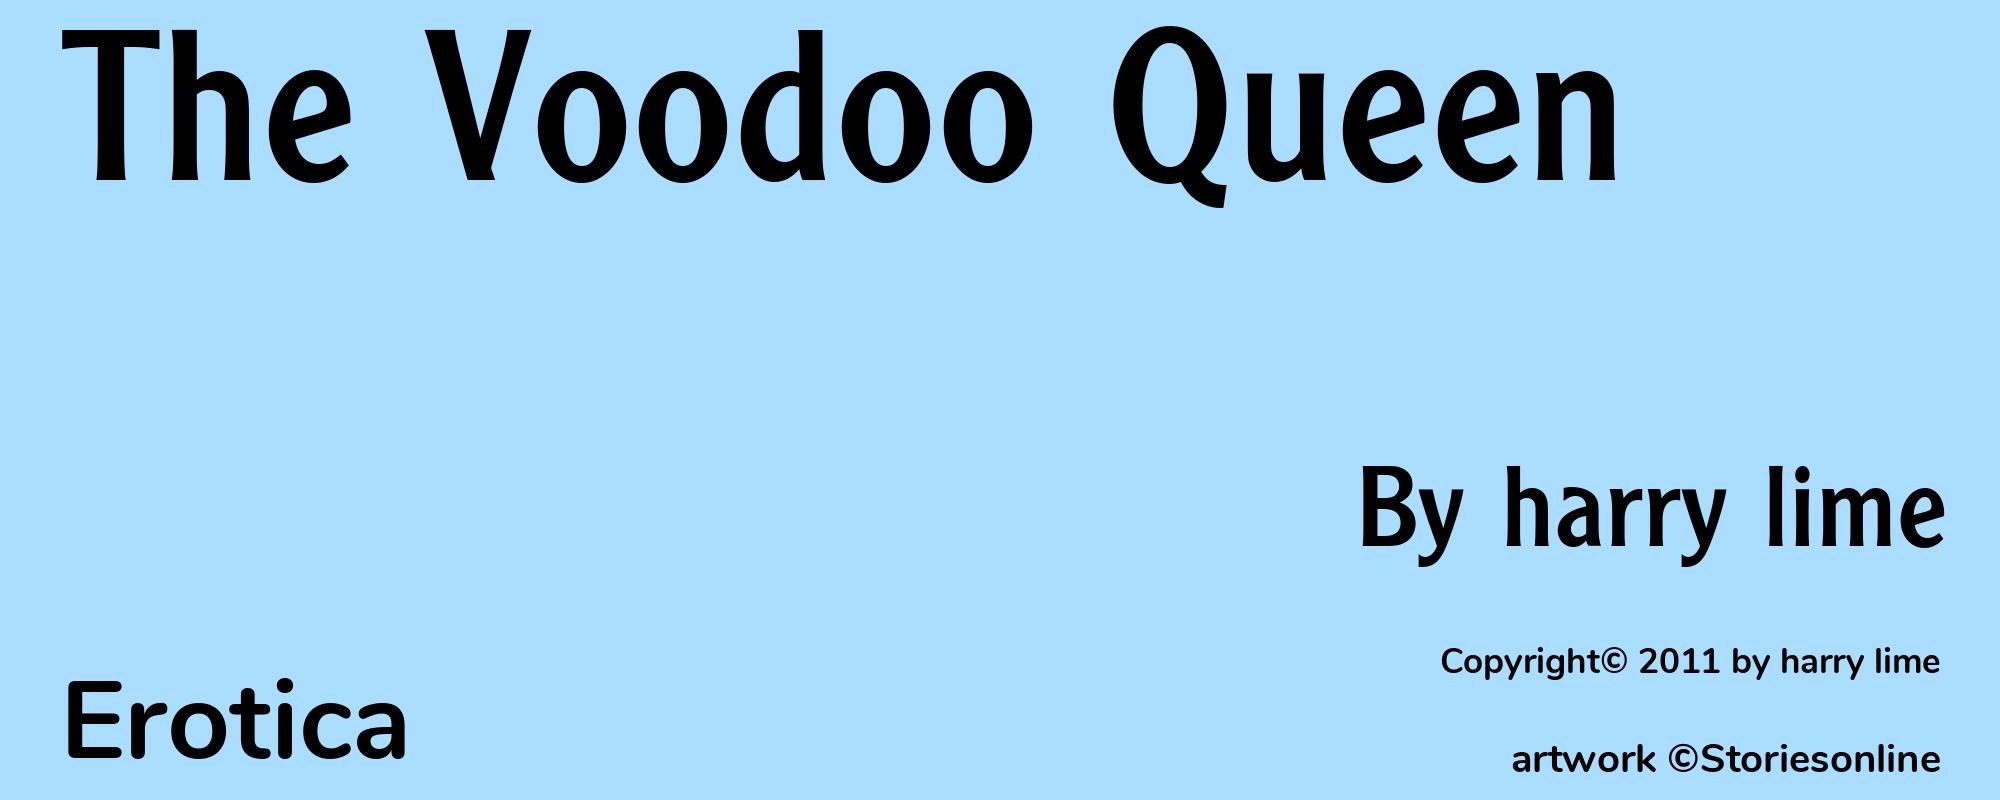 The Voodoo Queen - Cover